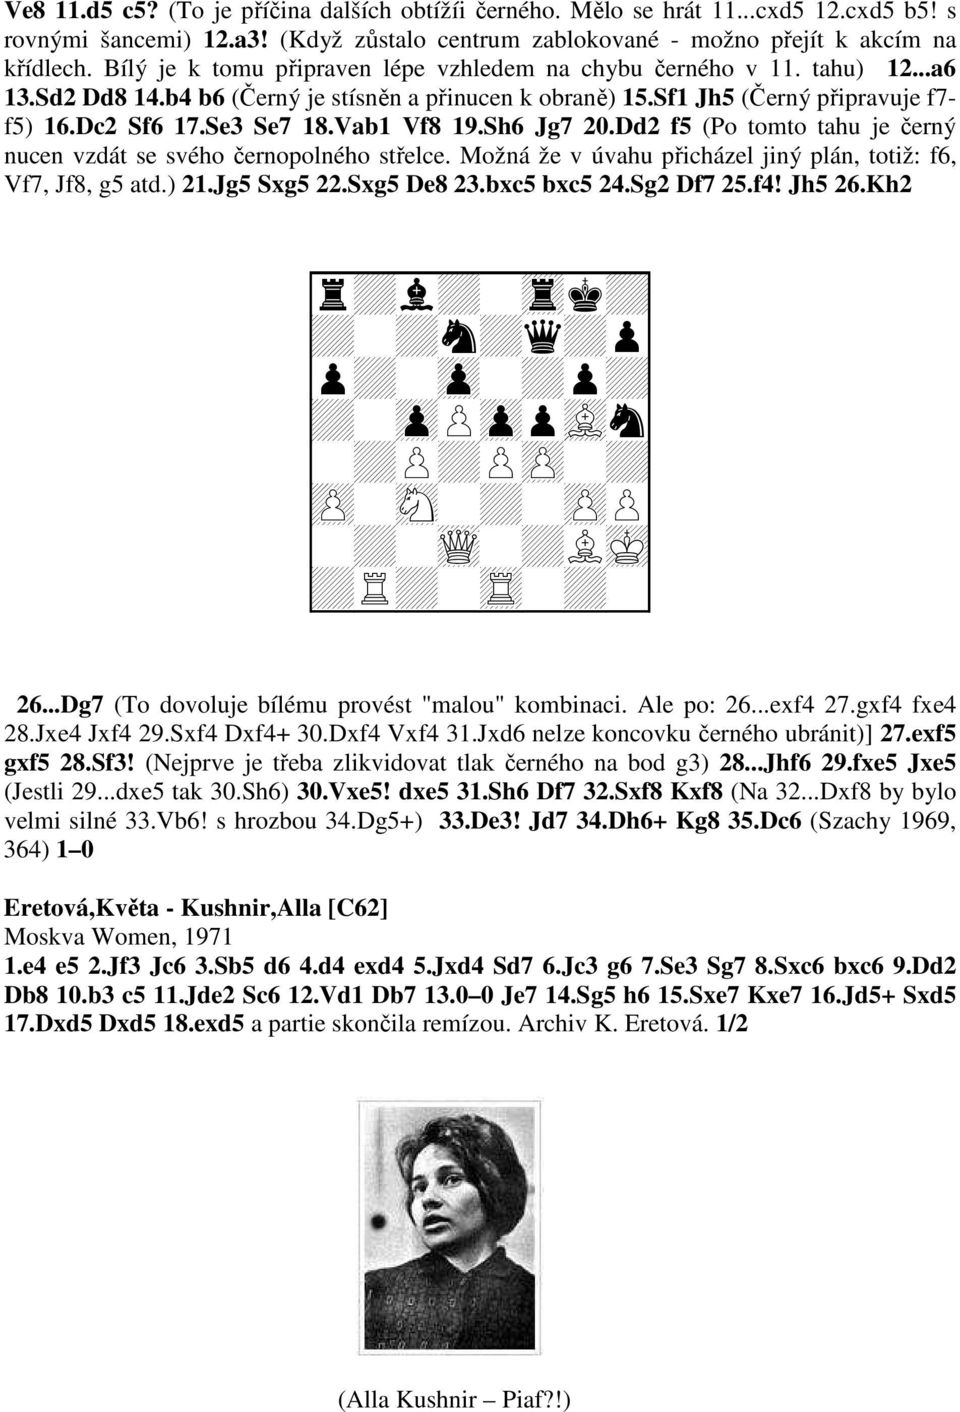 Vab1 Vf8 19.Sh6 Jg7 20.Dd2 f5 (Po tomto tahu je černý nucen vzdát se svého černopolného střelce. Možná že v úvahu přicházel jiný plán, totiž: f6, Vf7, Jf8, g5 atd.) 21.Jg5 Sxg5 22.Sxg5 De8 23.